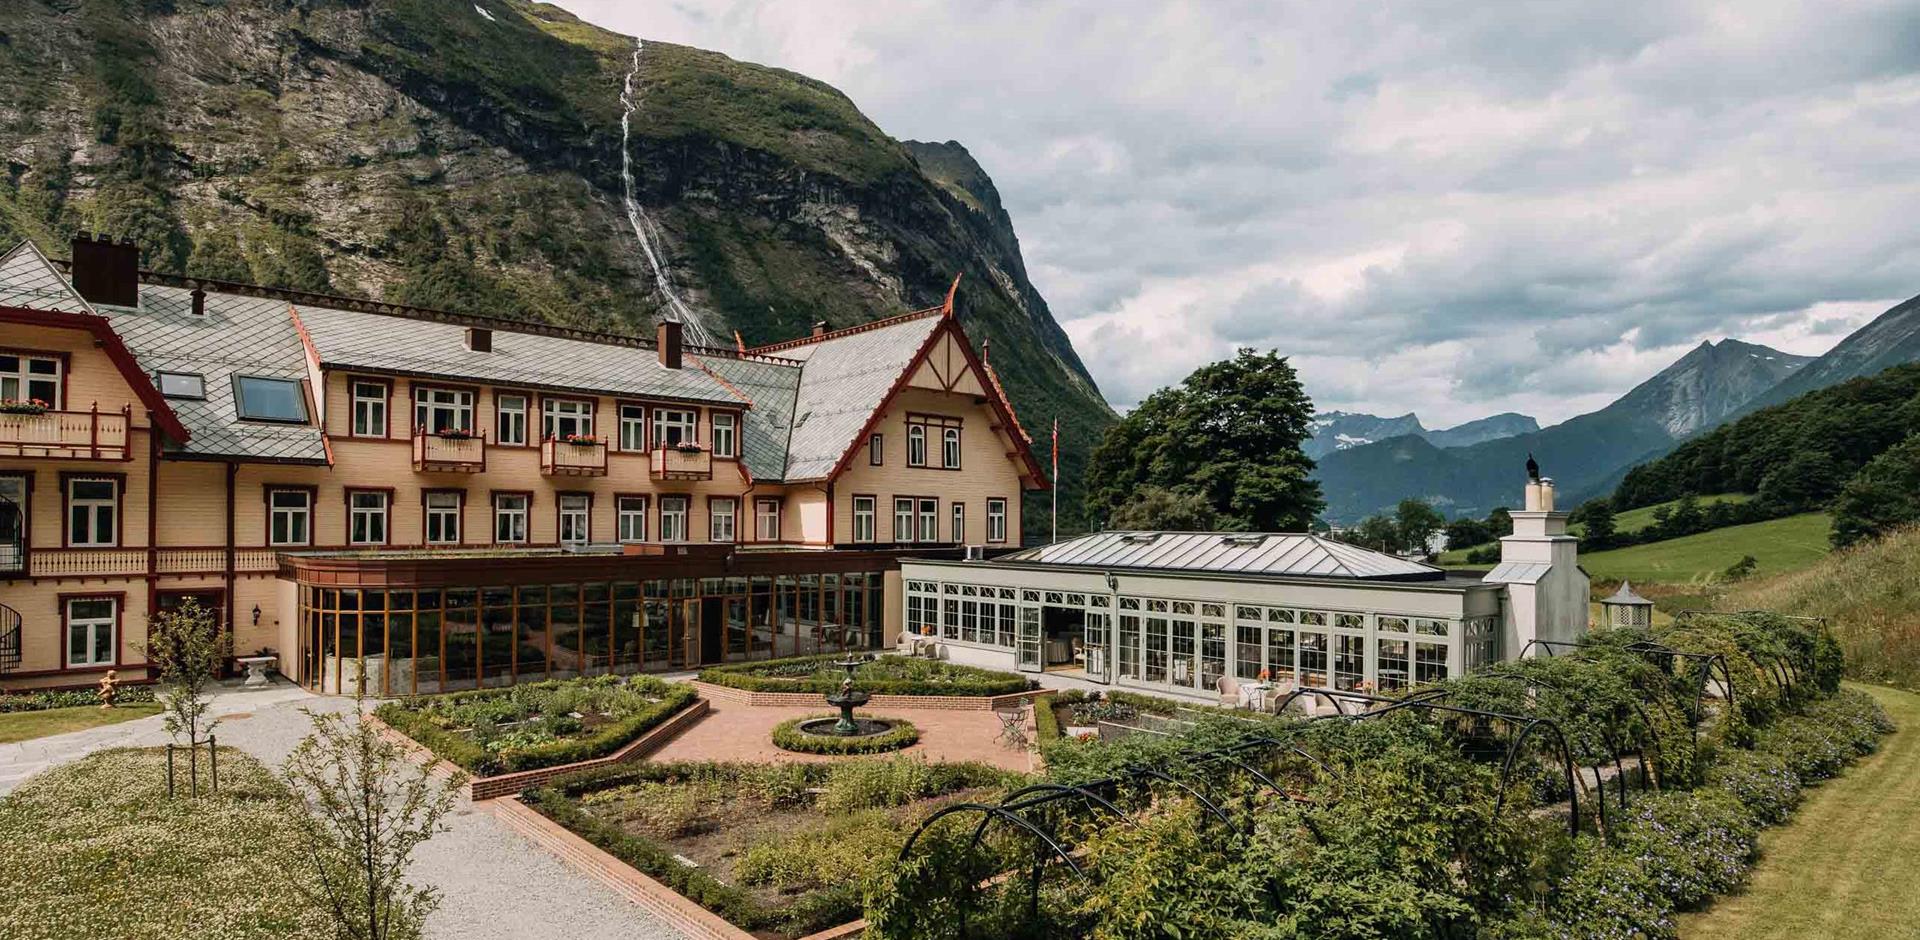 Hotel Union Øye, Bergen, Norway